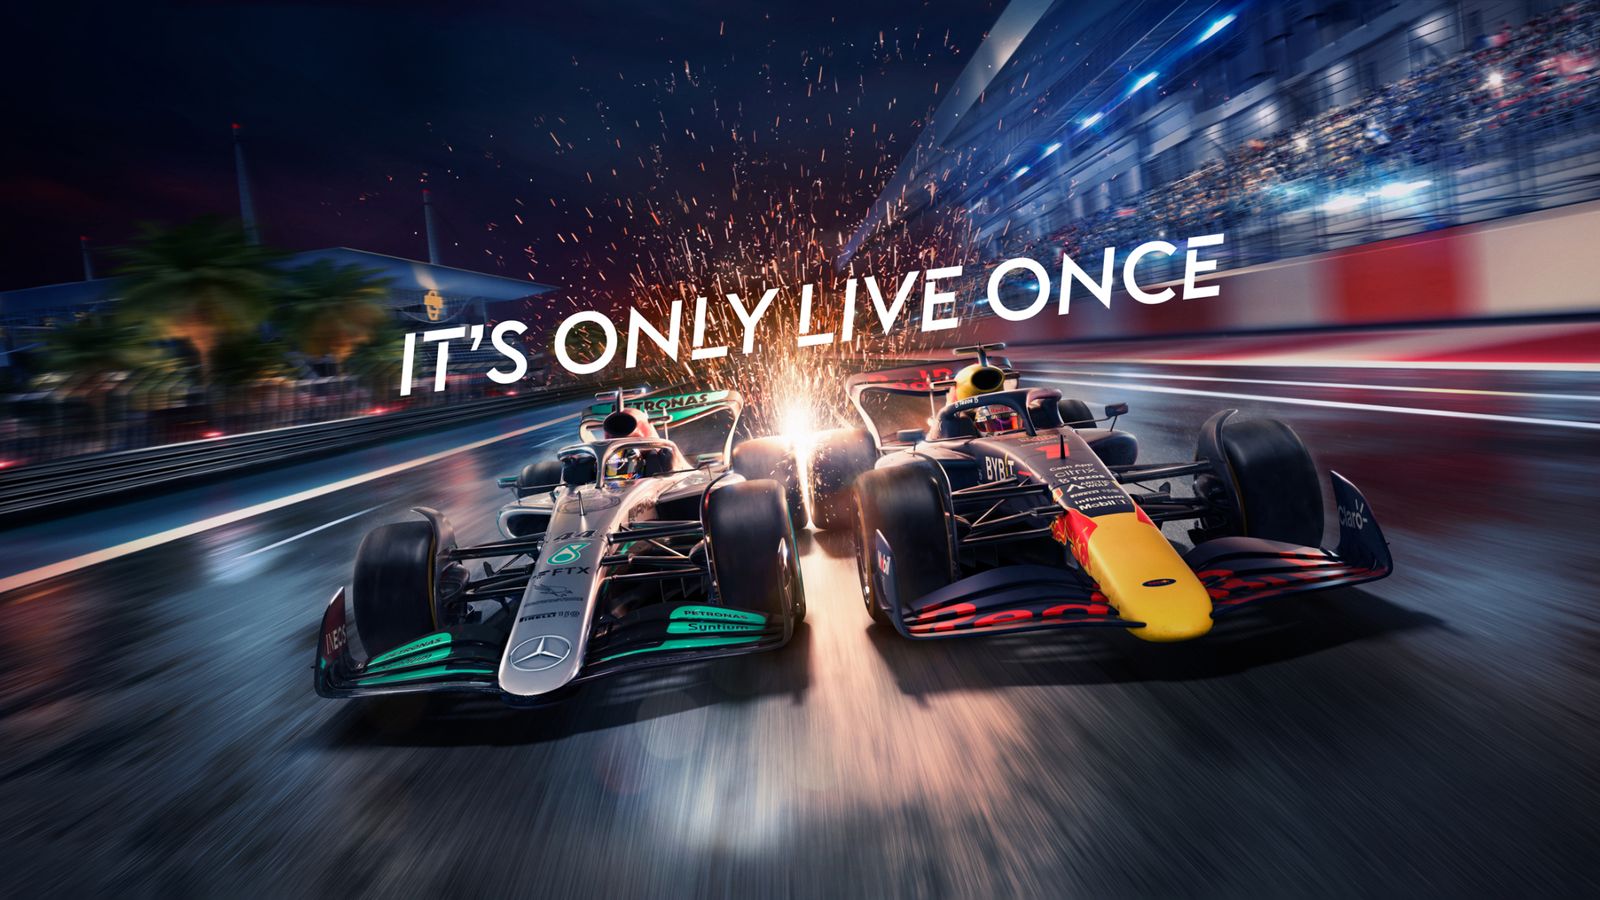 Die Formel 1 auf Sky Sports wird zum ersten Mal in ihrer Geschichte in High Dynamic Range (HDR) übertragen